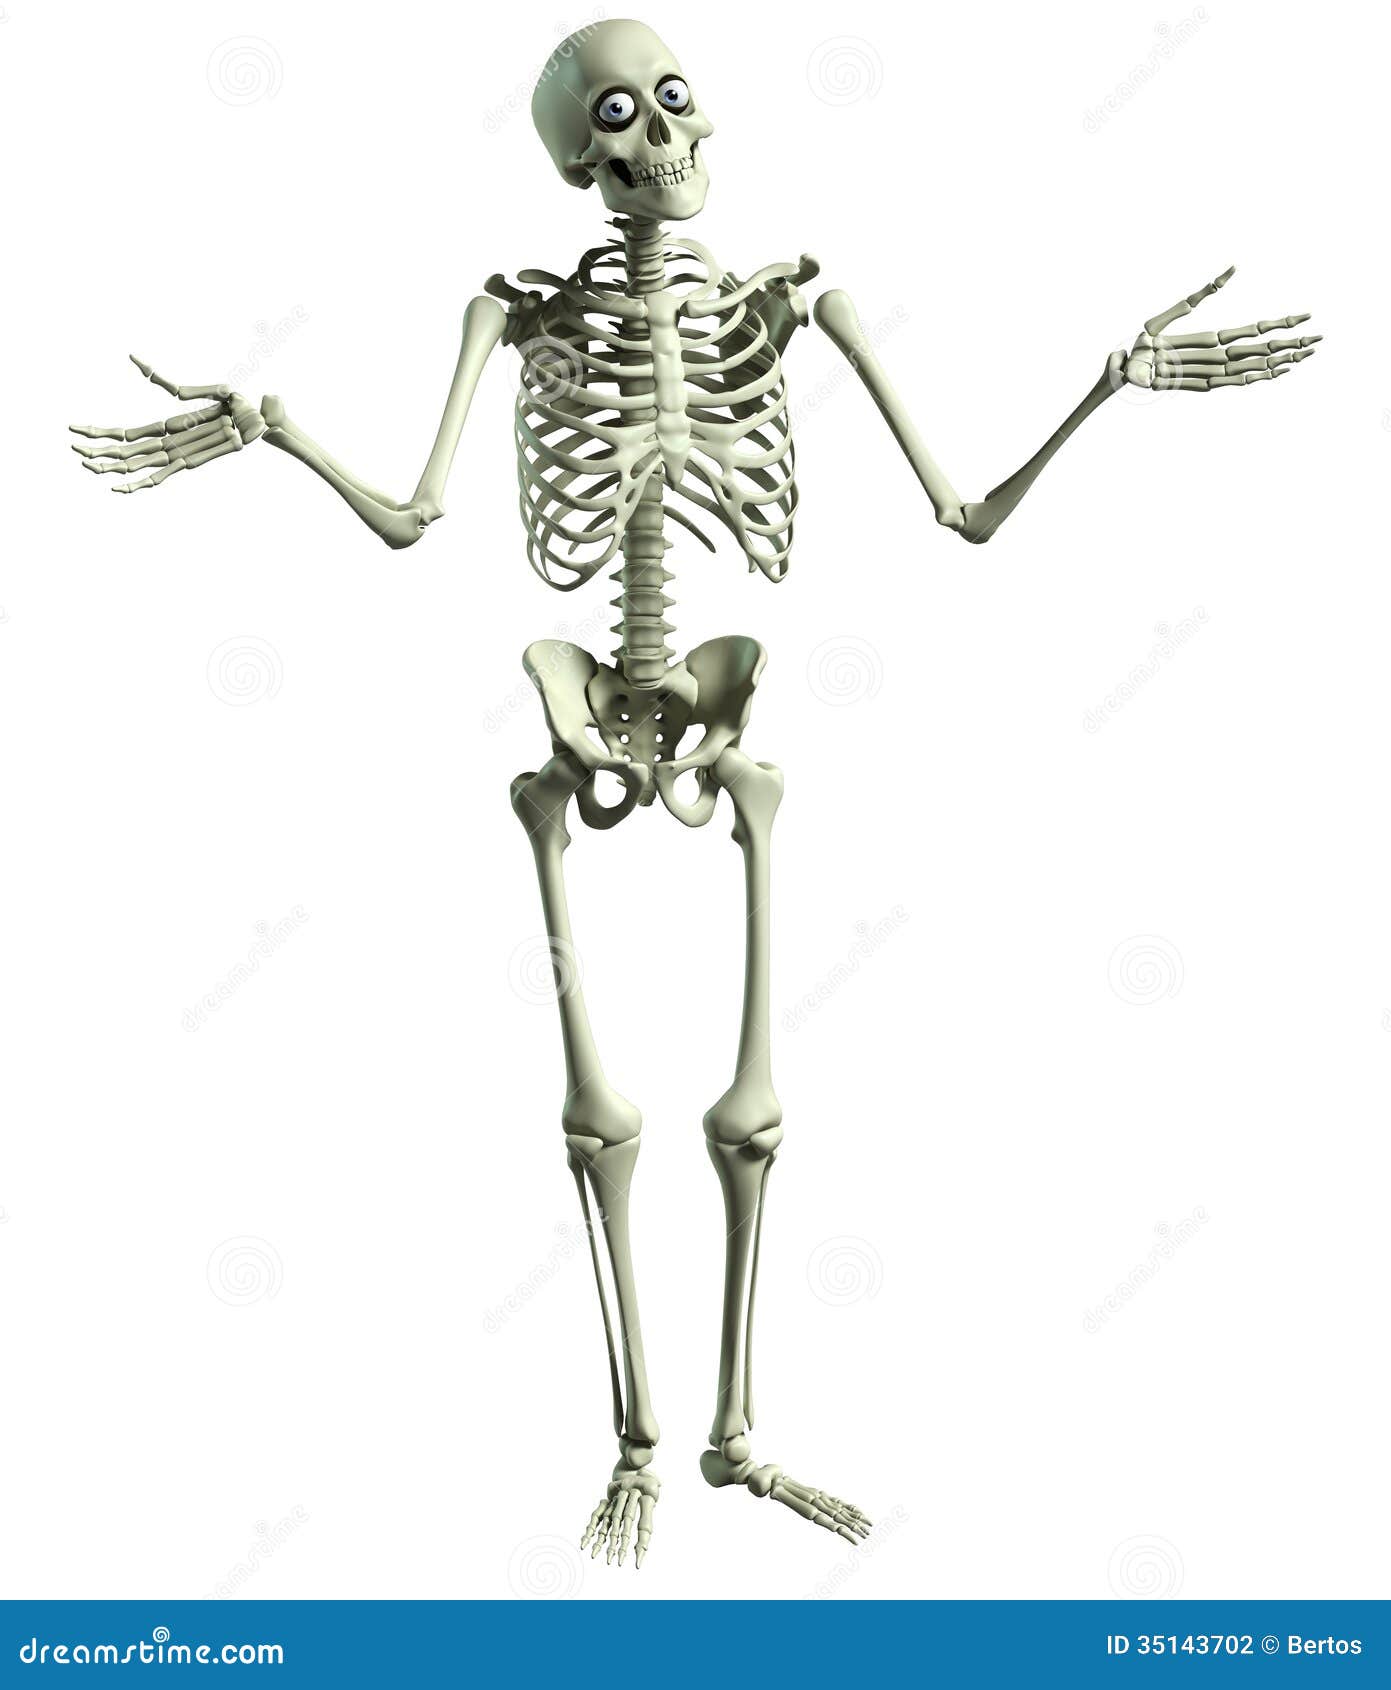 Прямо на скелет. Лежачий скелет. Скелет из мультика. Скелет на прозрачном фоне. Карикатура скелета человека.